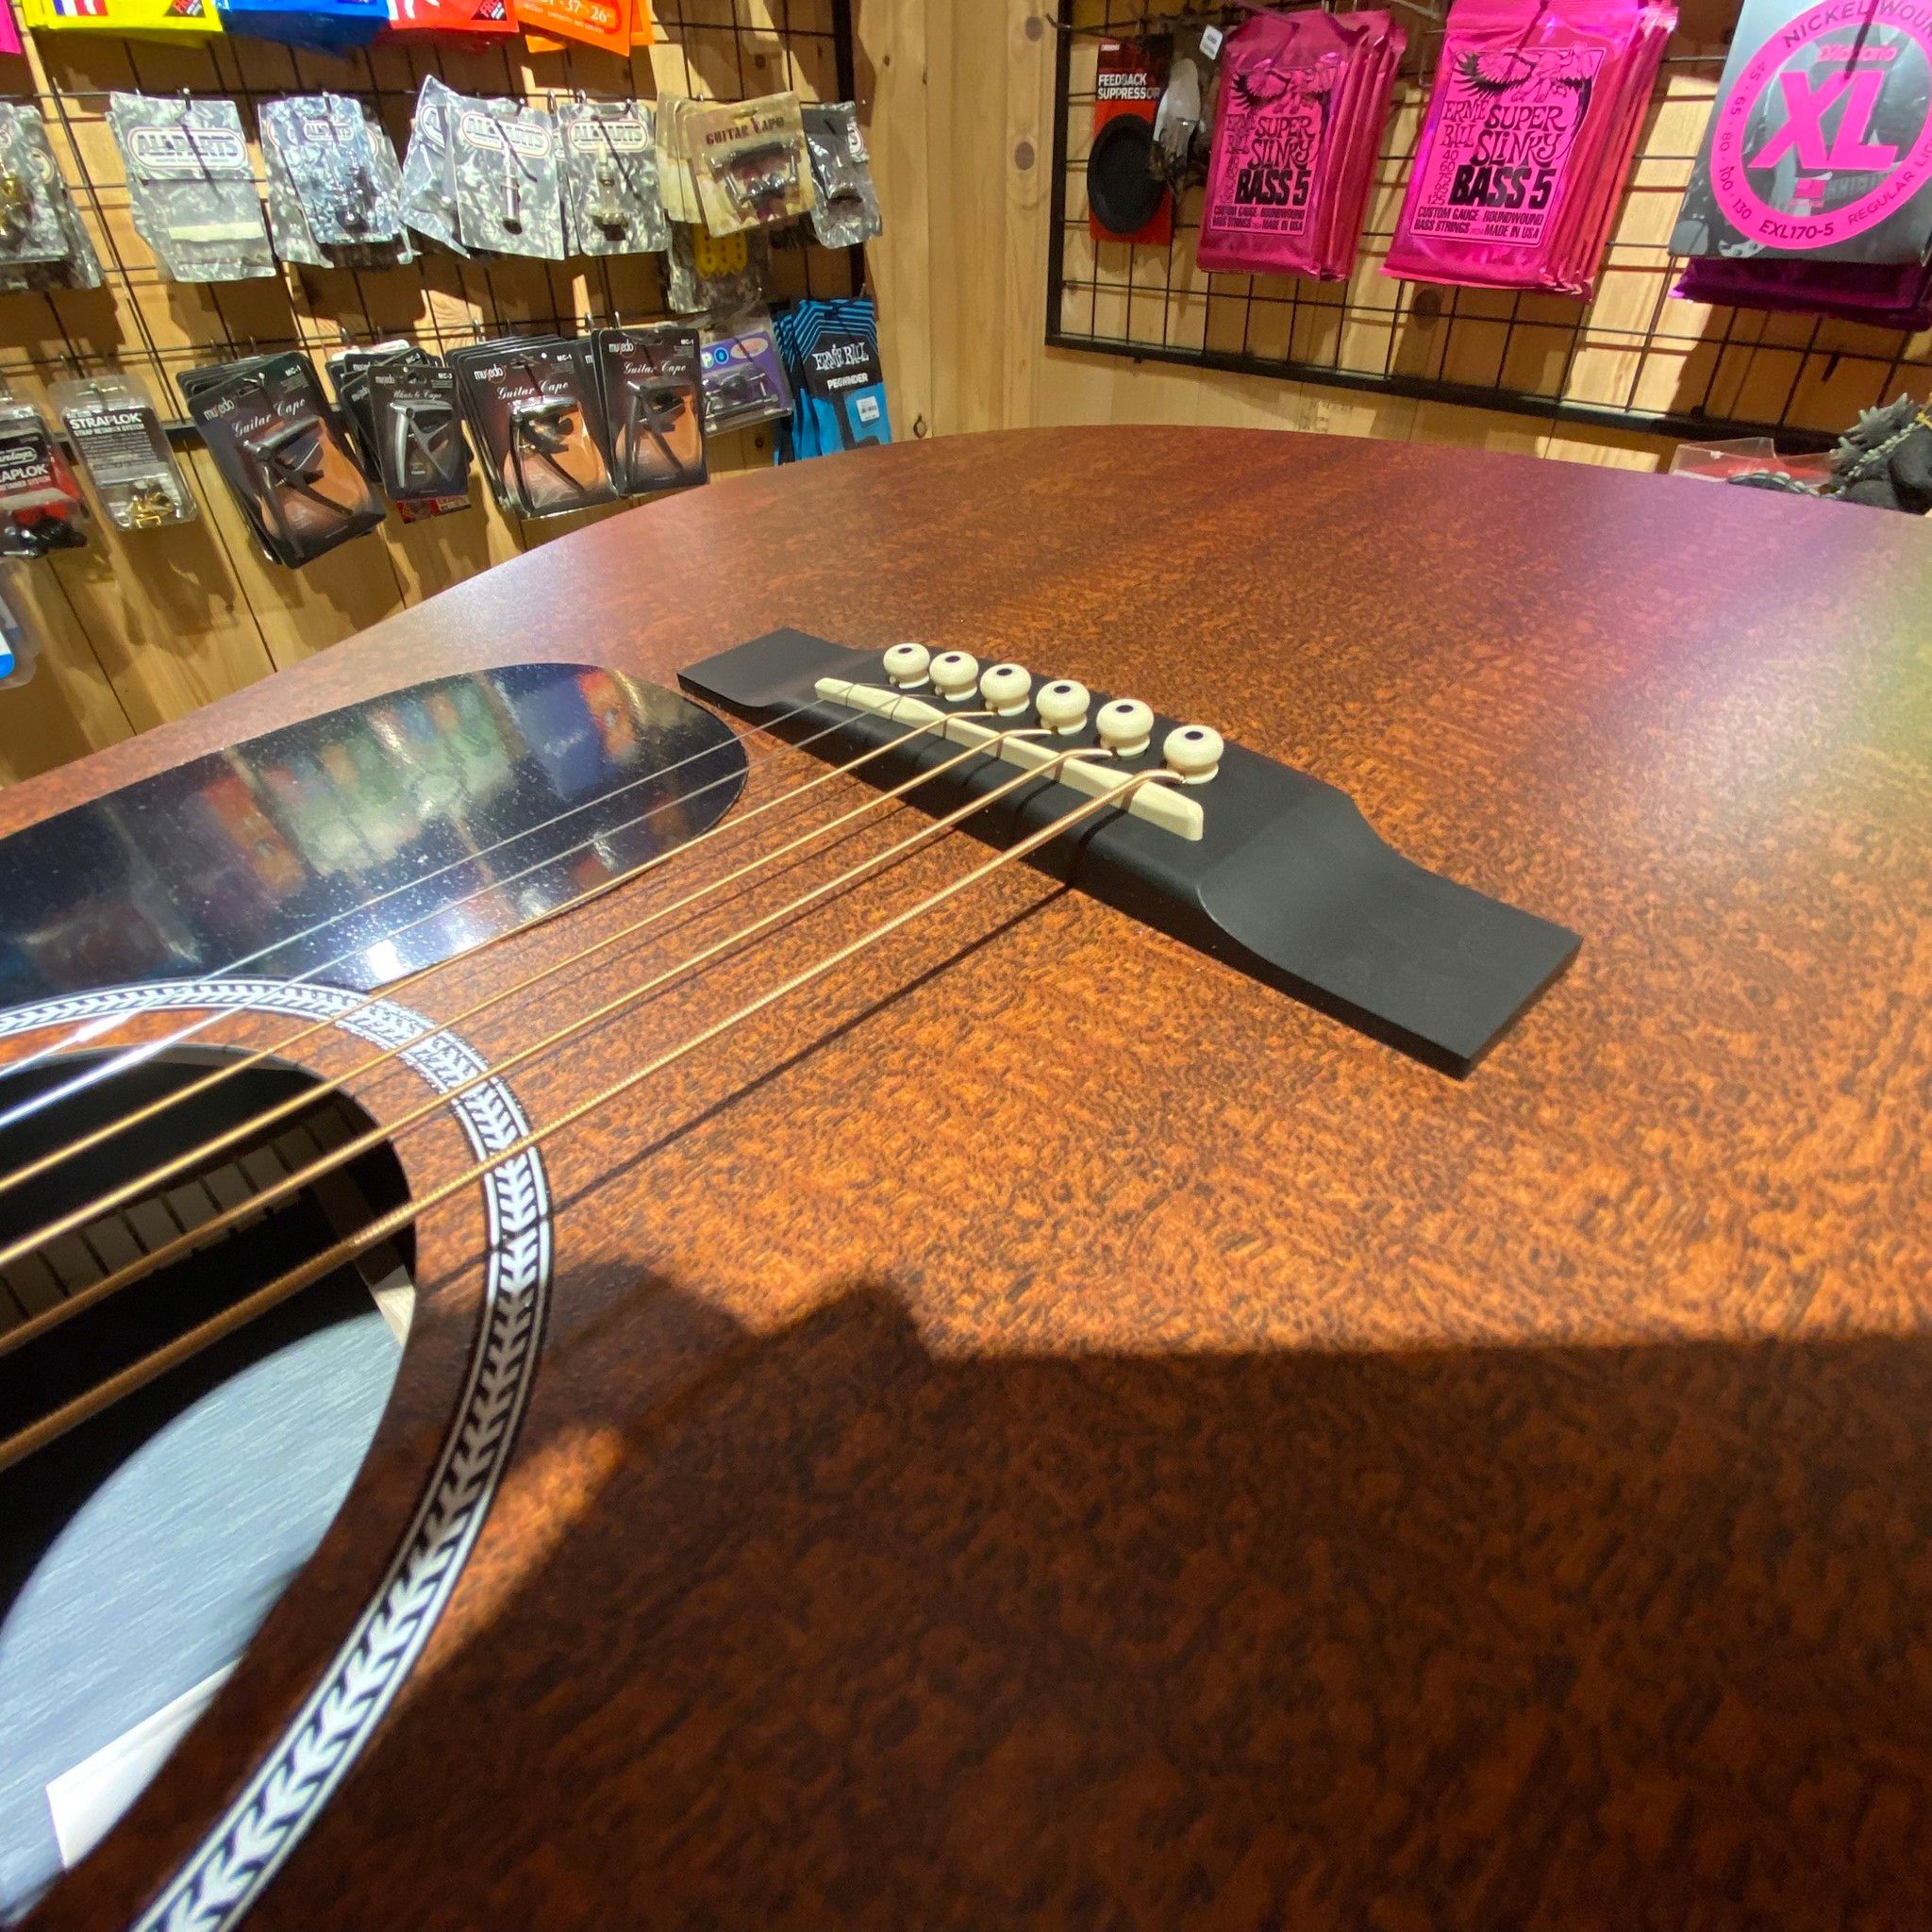  Martin X Series D-X1E Mahogany Acoustic Guitar 